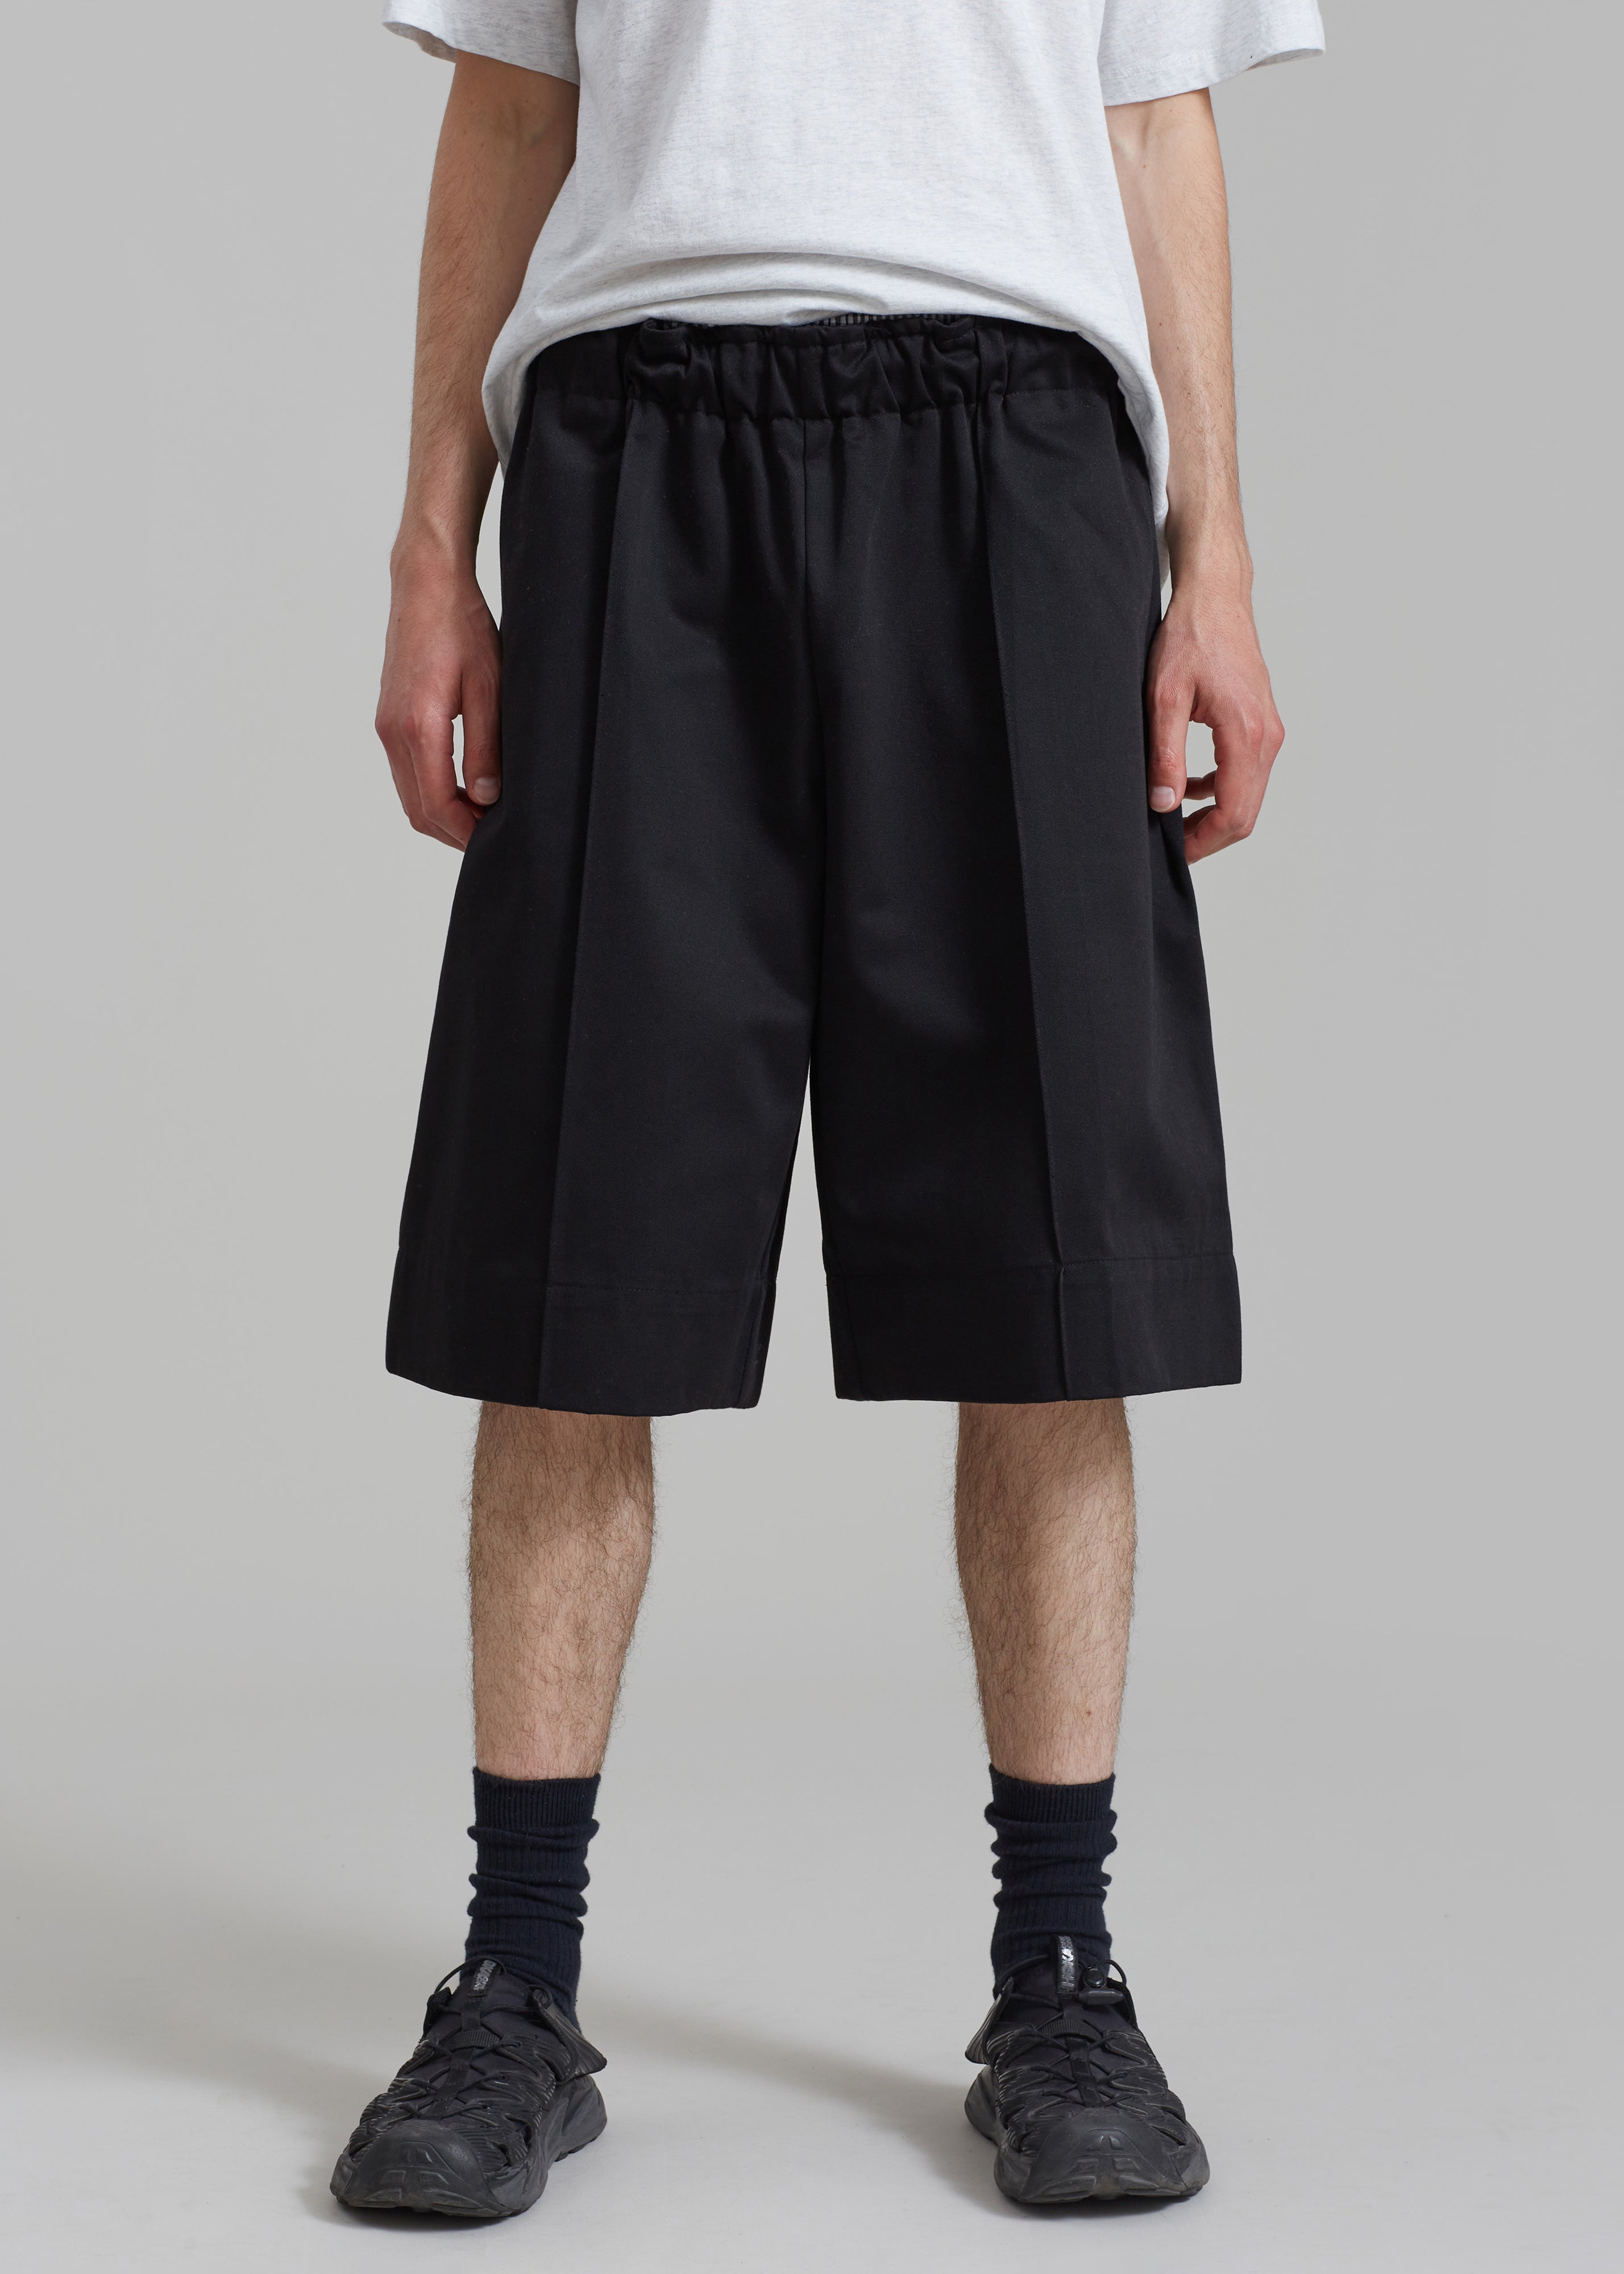 Adan Bermuda Shorts - Black - 2